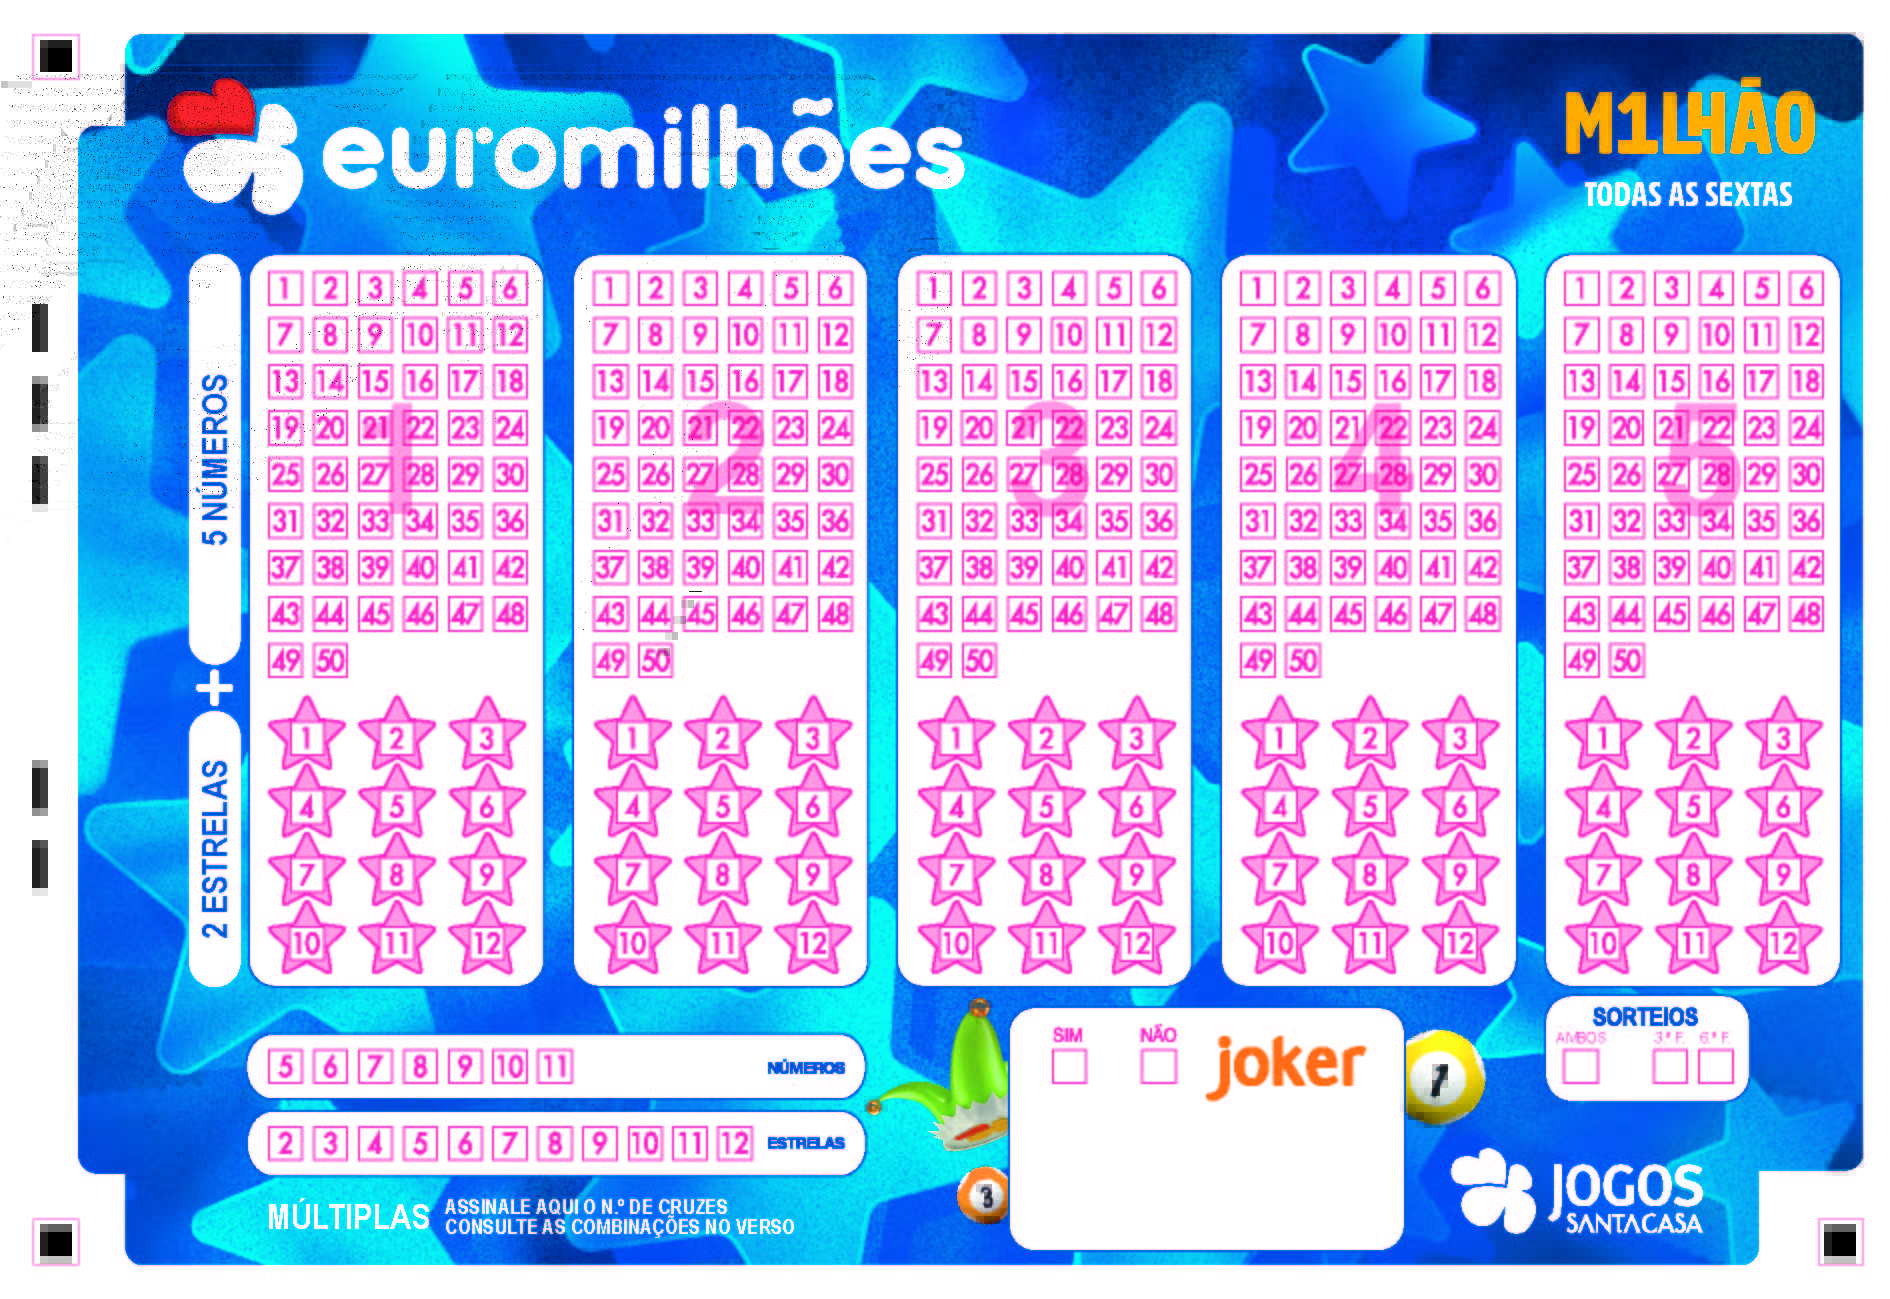 Os 10 números mais saídos no Euromilhões